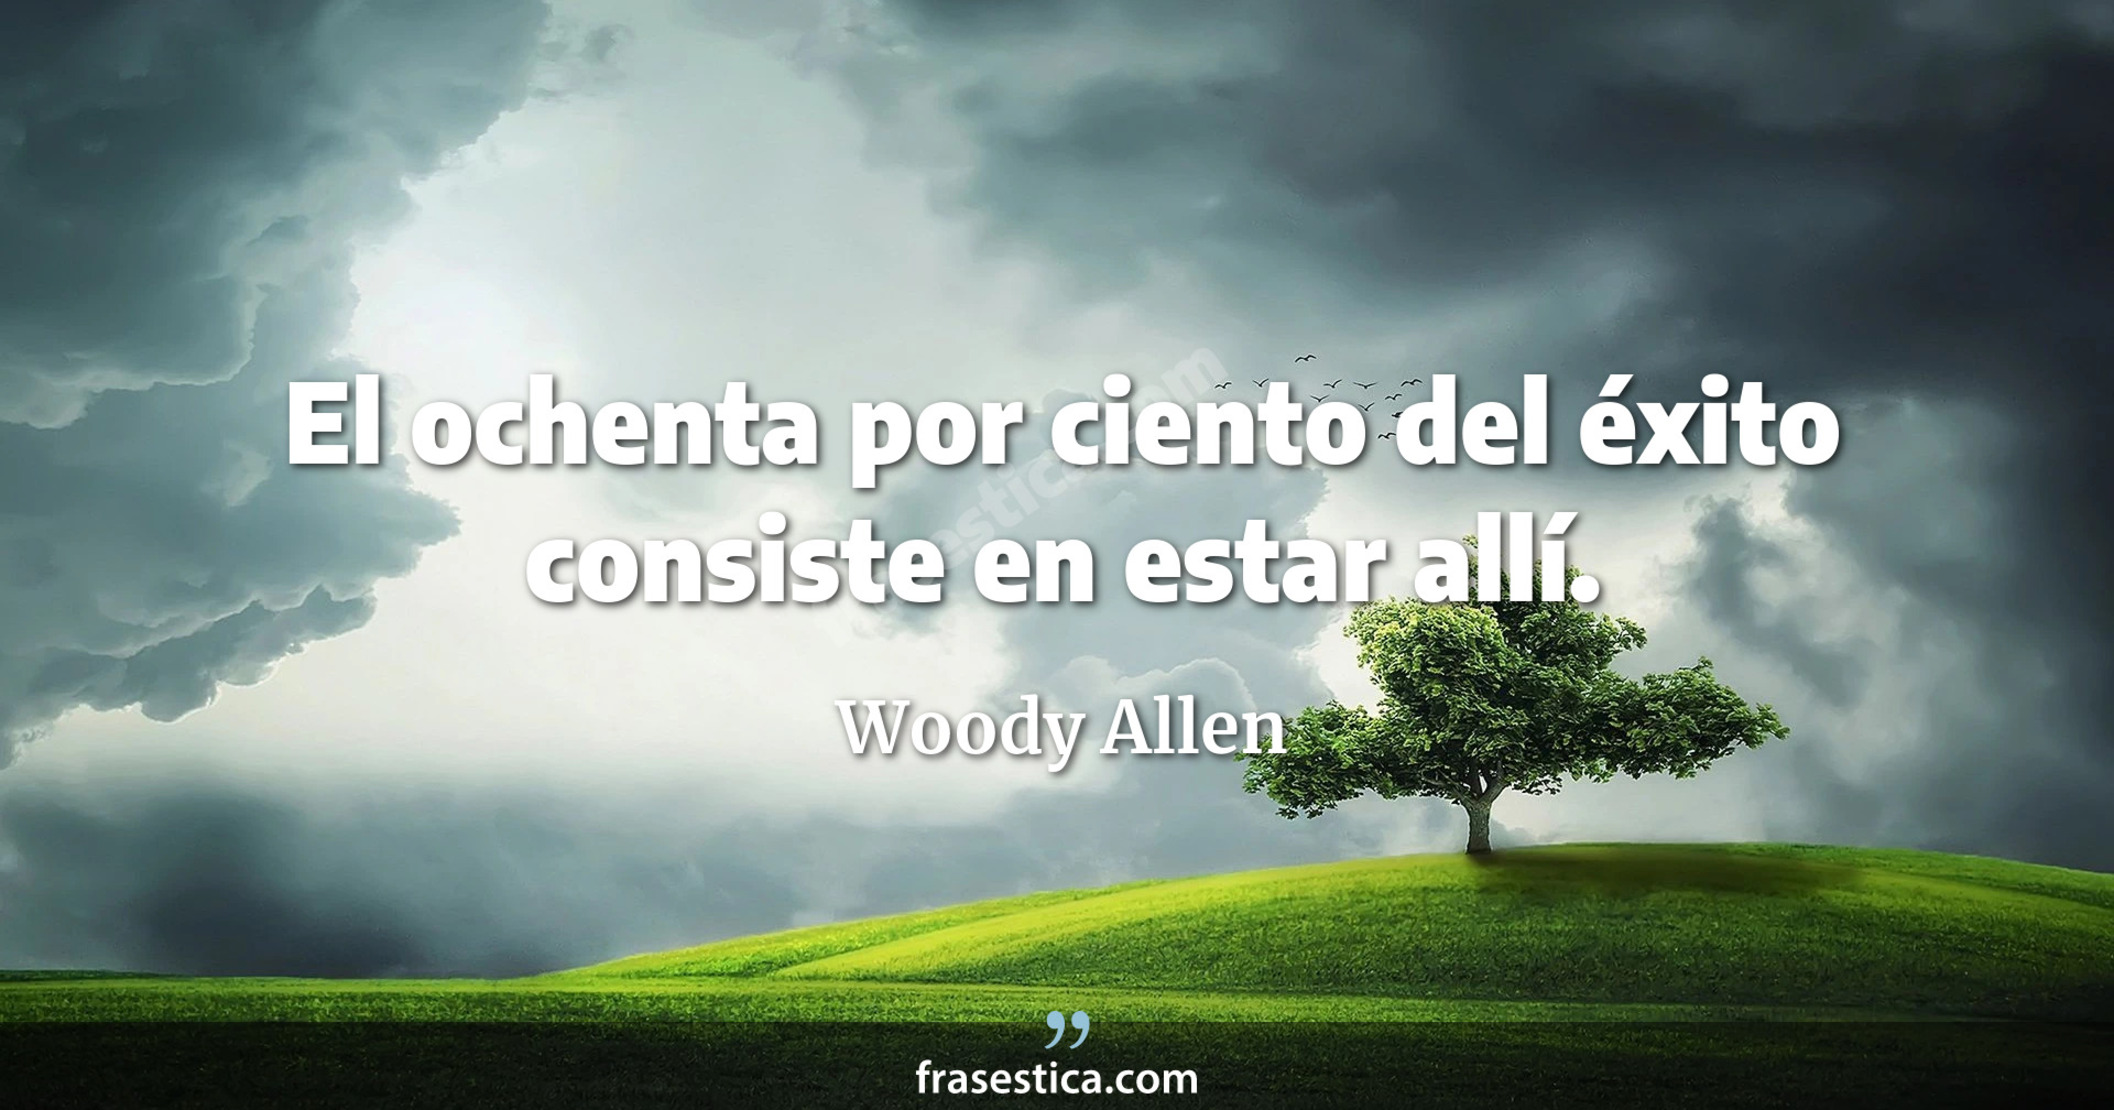 El ochenta por ciento del éxito consiste en estar allí. - Woody Allen